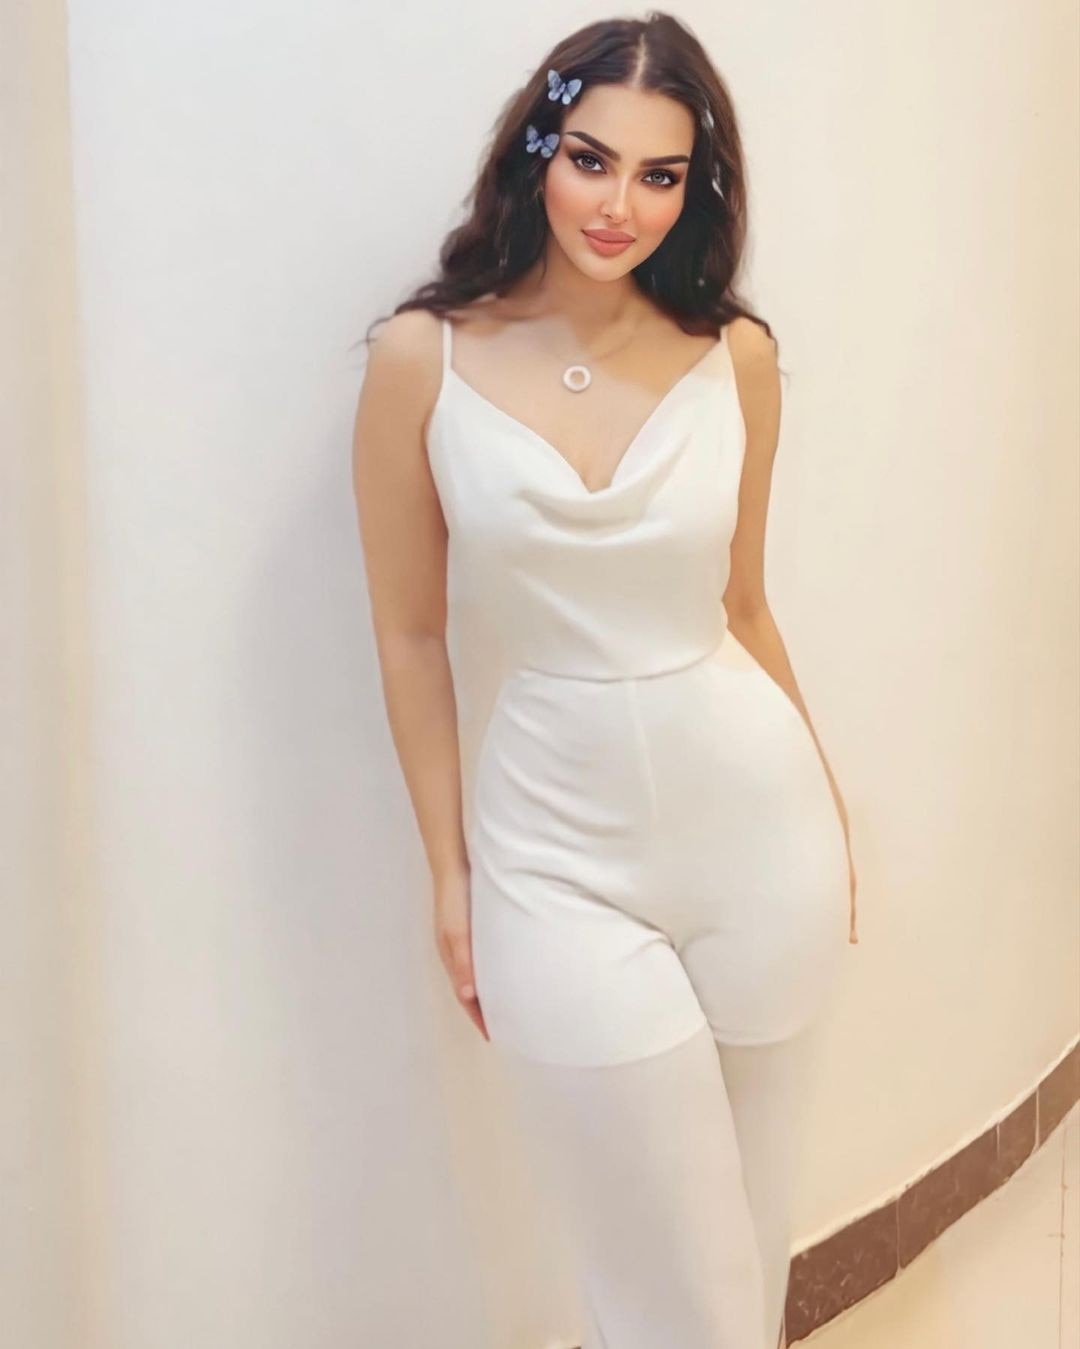 Nhan sắc gây tranh cãi của người đẹp Saudi Arabia đầu tiên thi Hoa hậu Hoàn vũ ảnh 23